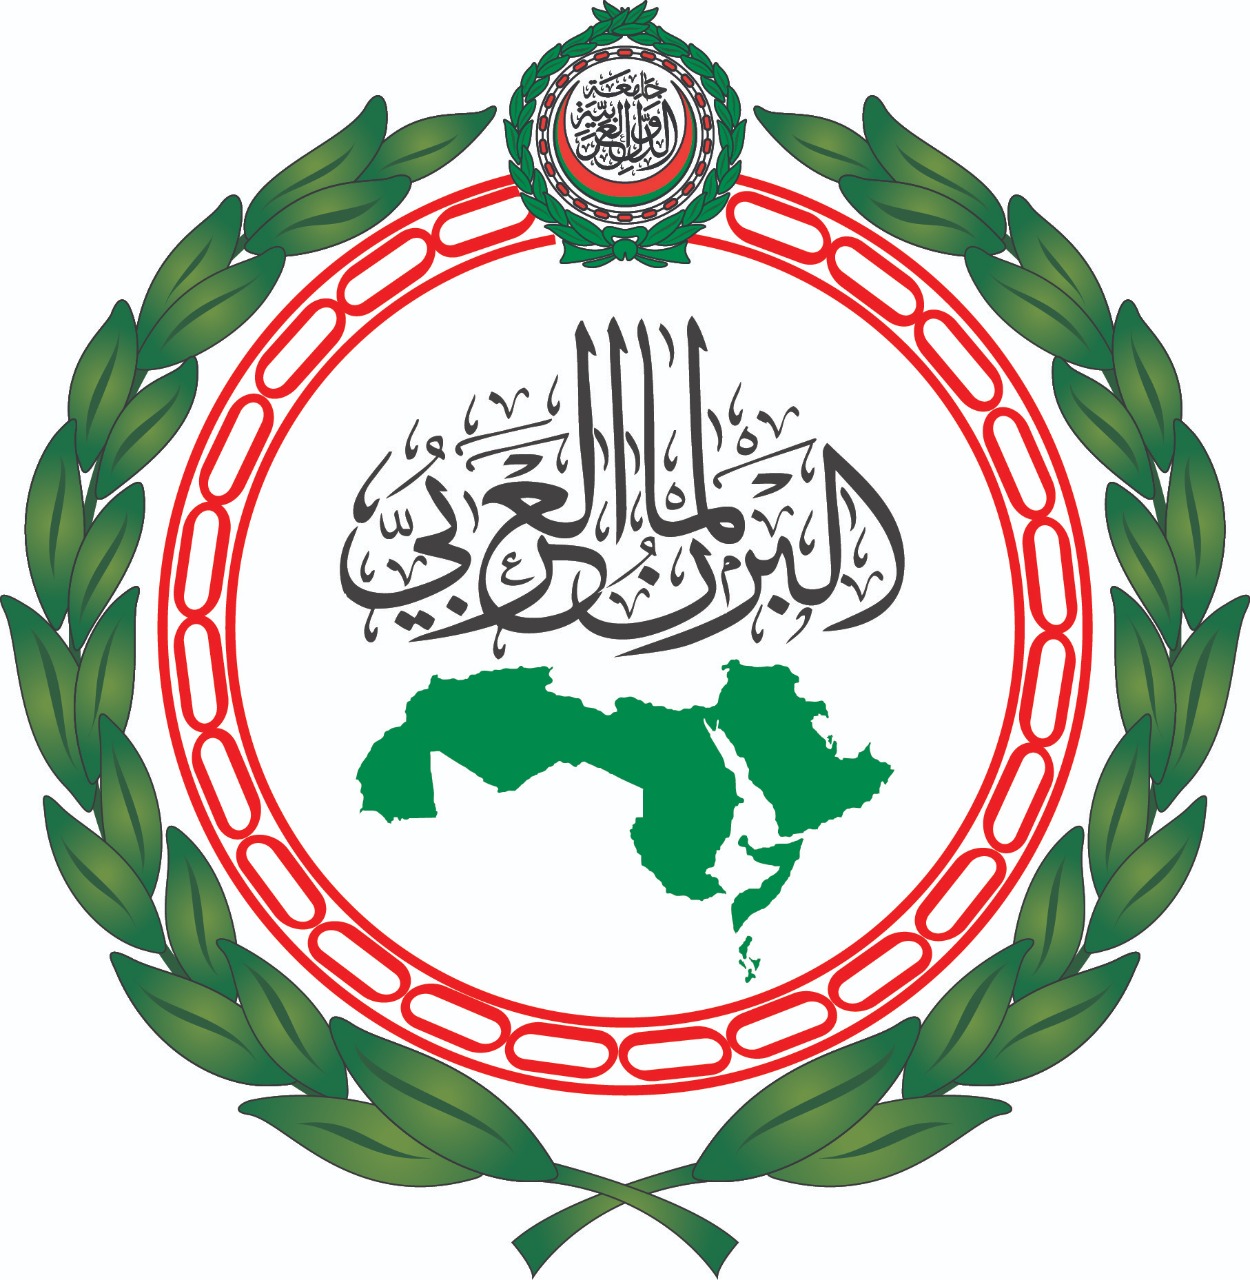 البرلمان العربي يدين التصريحات المسيئة للرسول الكريم